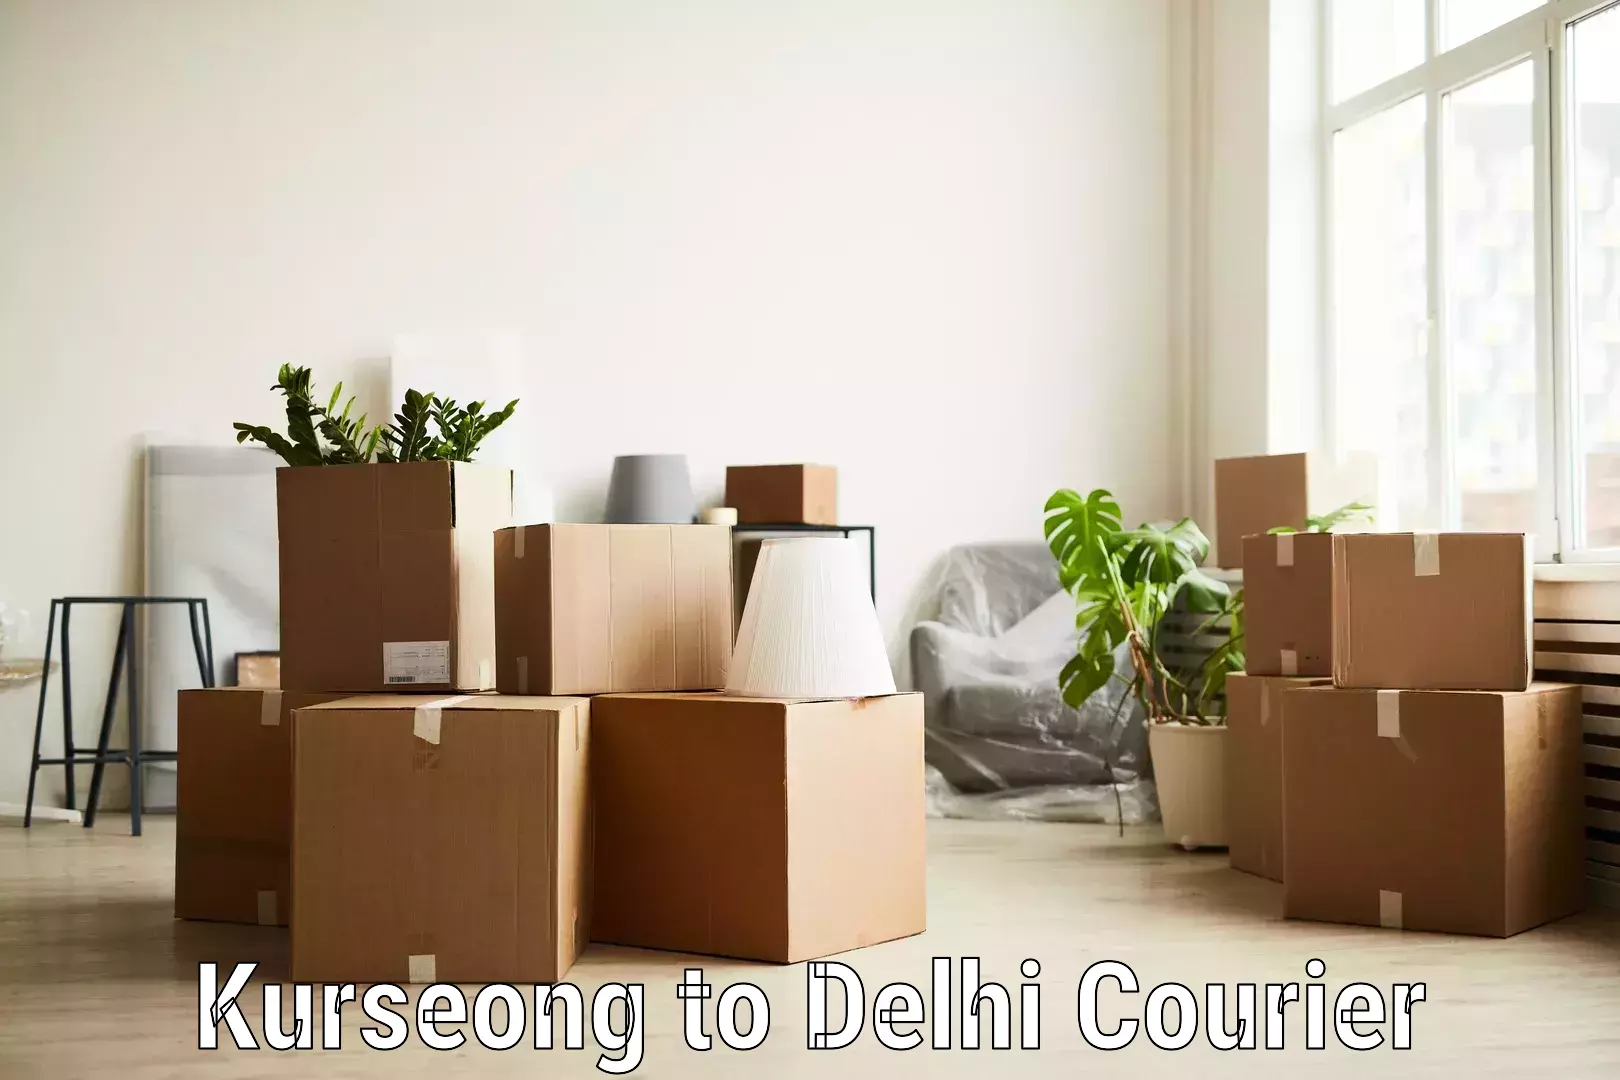 Efficient parcel transport Kurseong to East Delhi